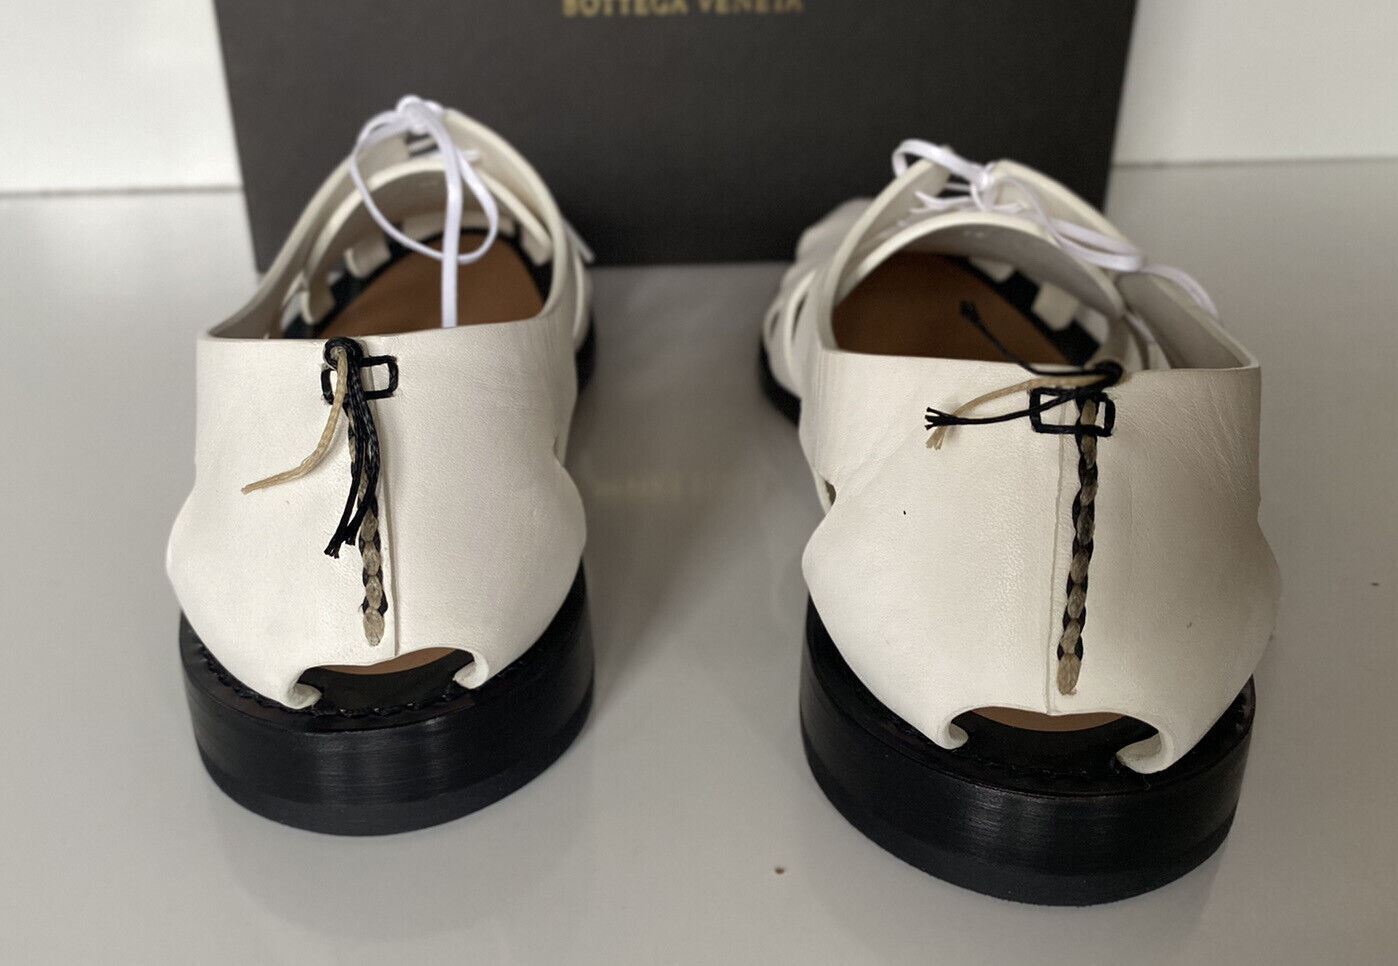 NIB Bottega Veneta Men's Derby Leather White Shoes Cut-out Details 8.5 US 574829